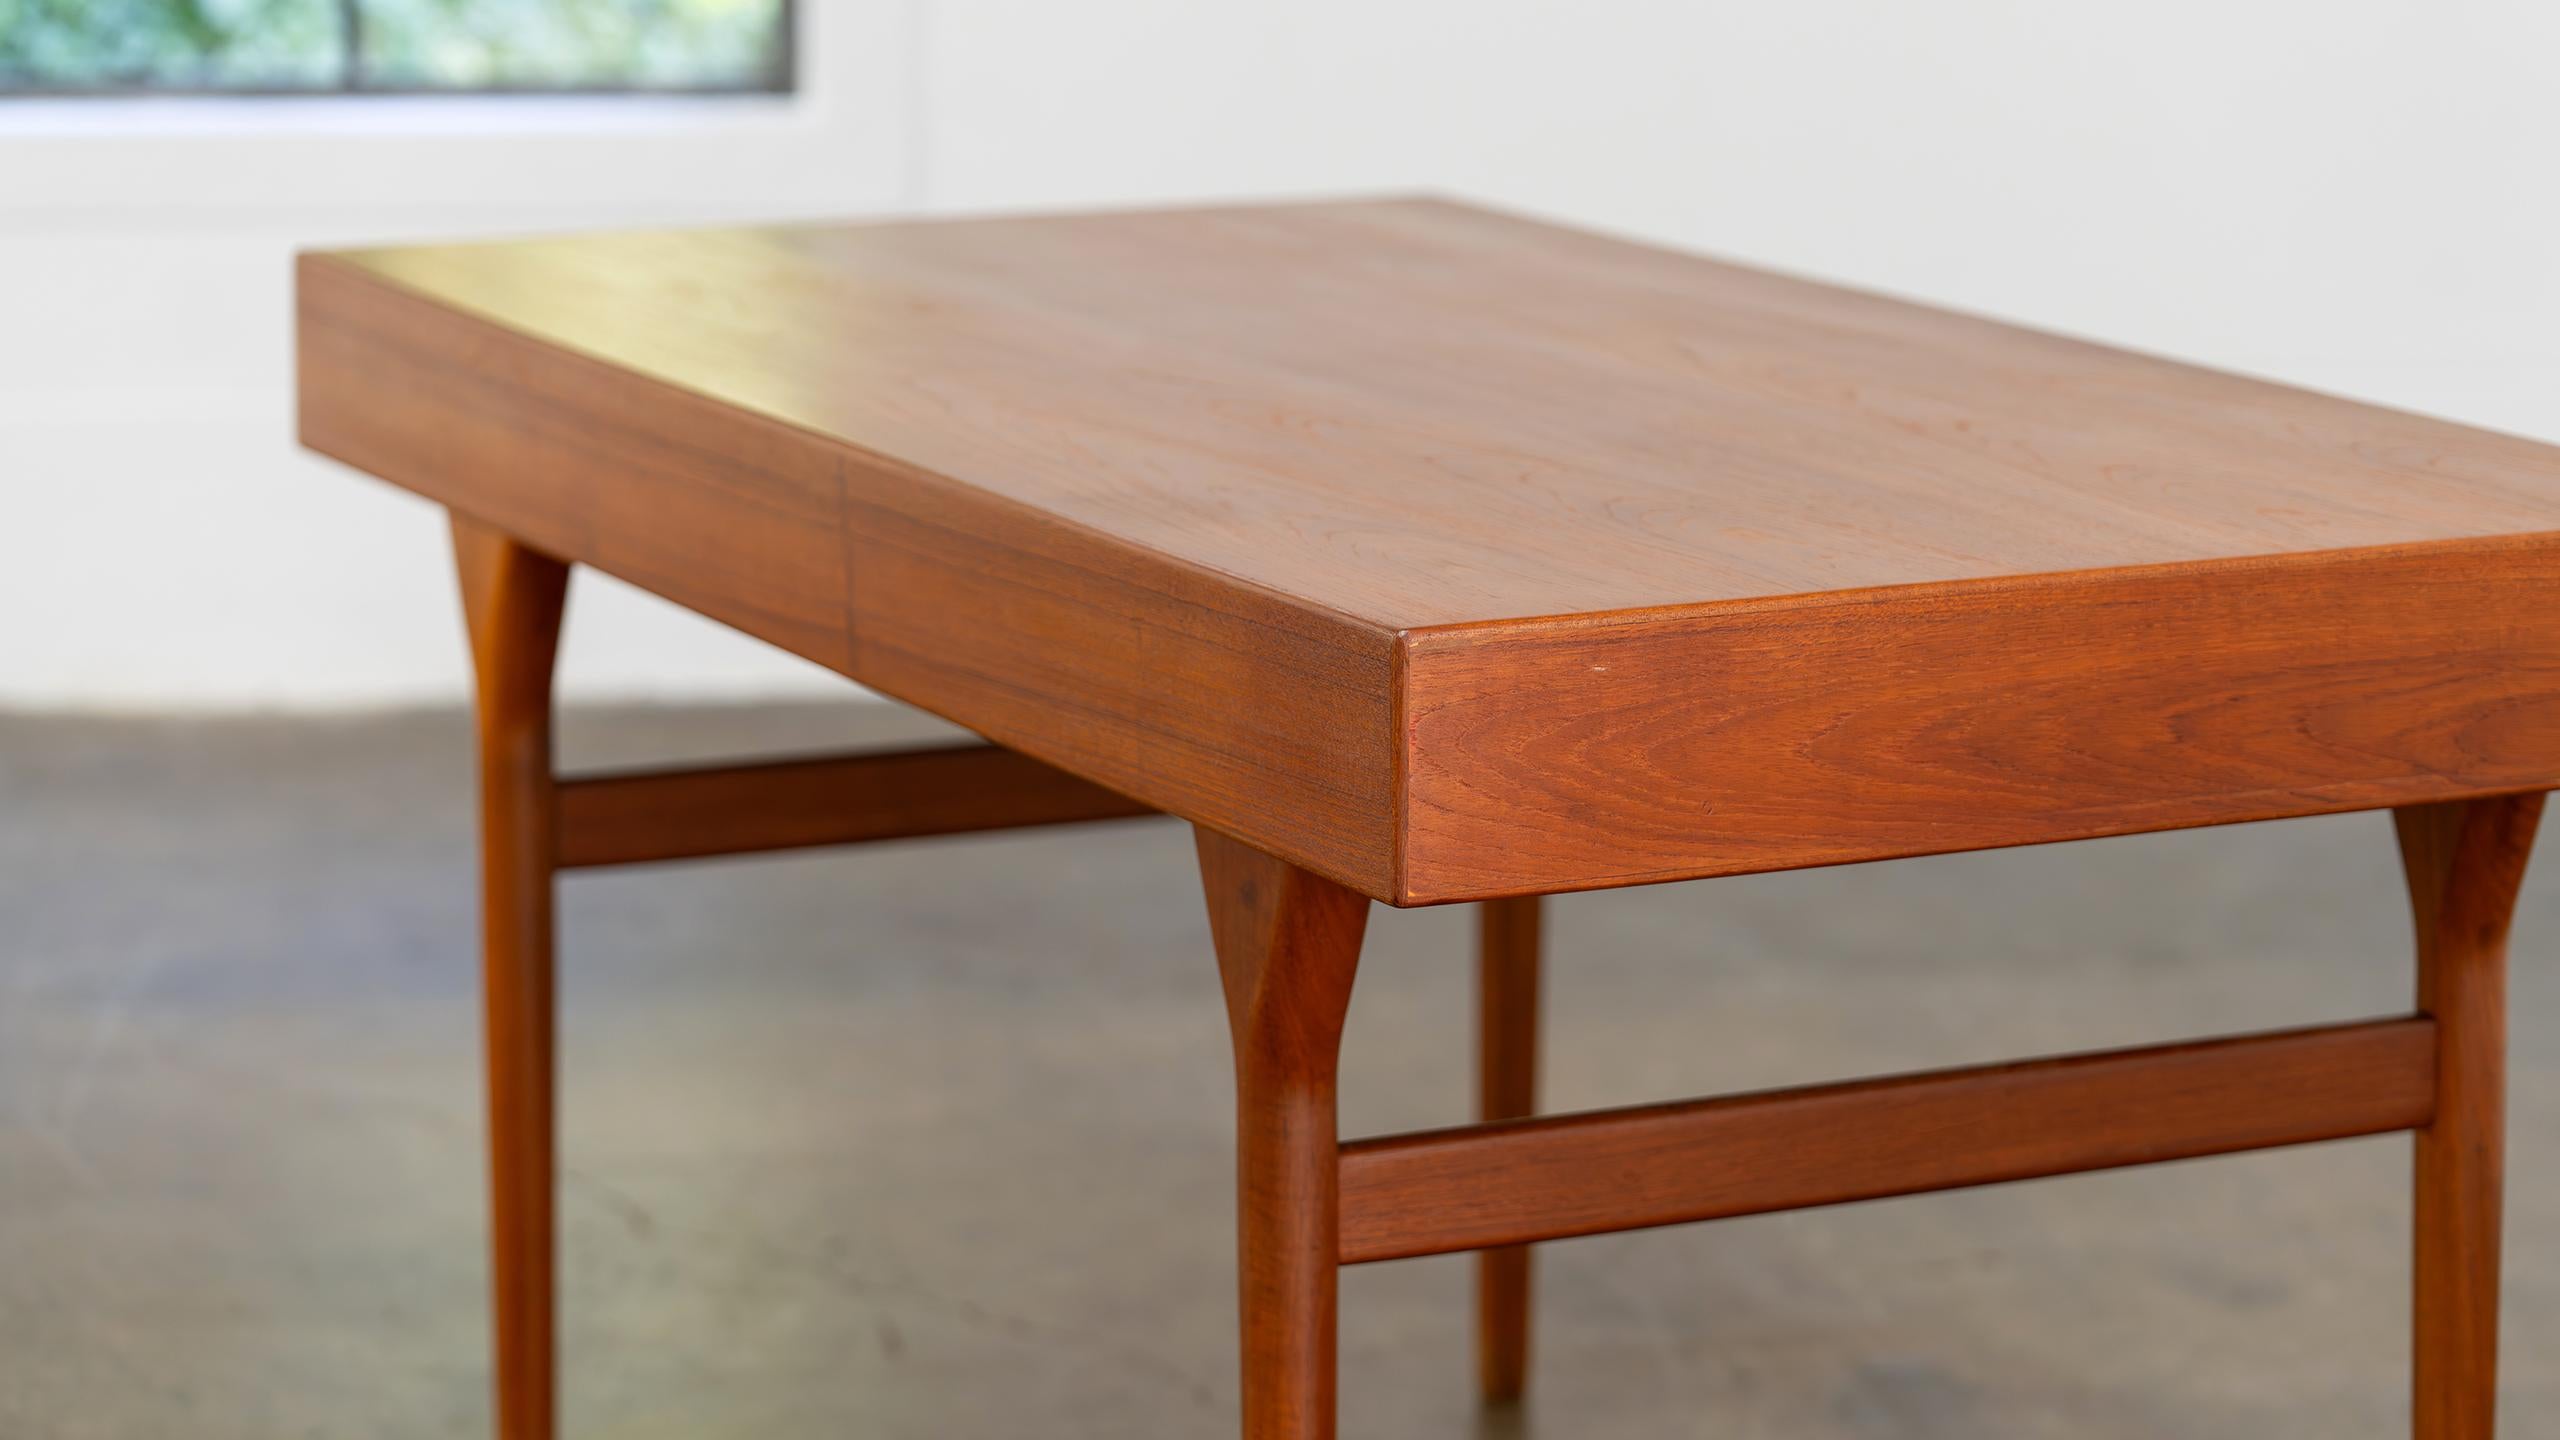 Nanna Ditzel Table Desk in Teak Søren Willadsen 1958 Denmark Mid Century Modern For Sale 8